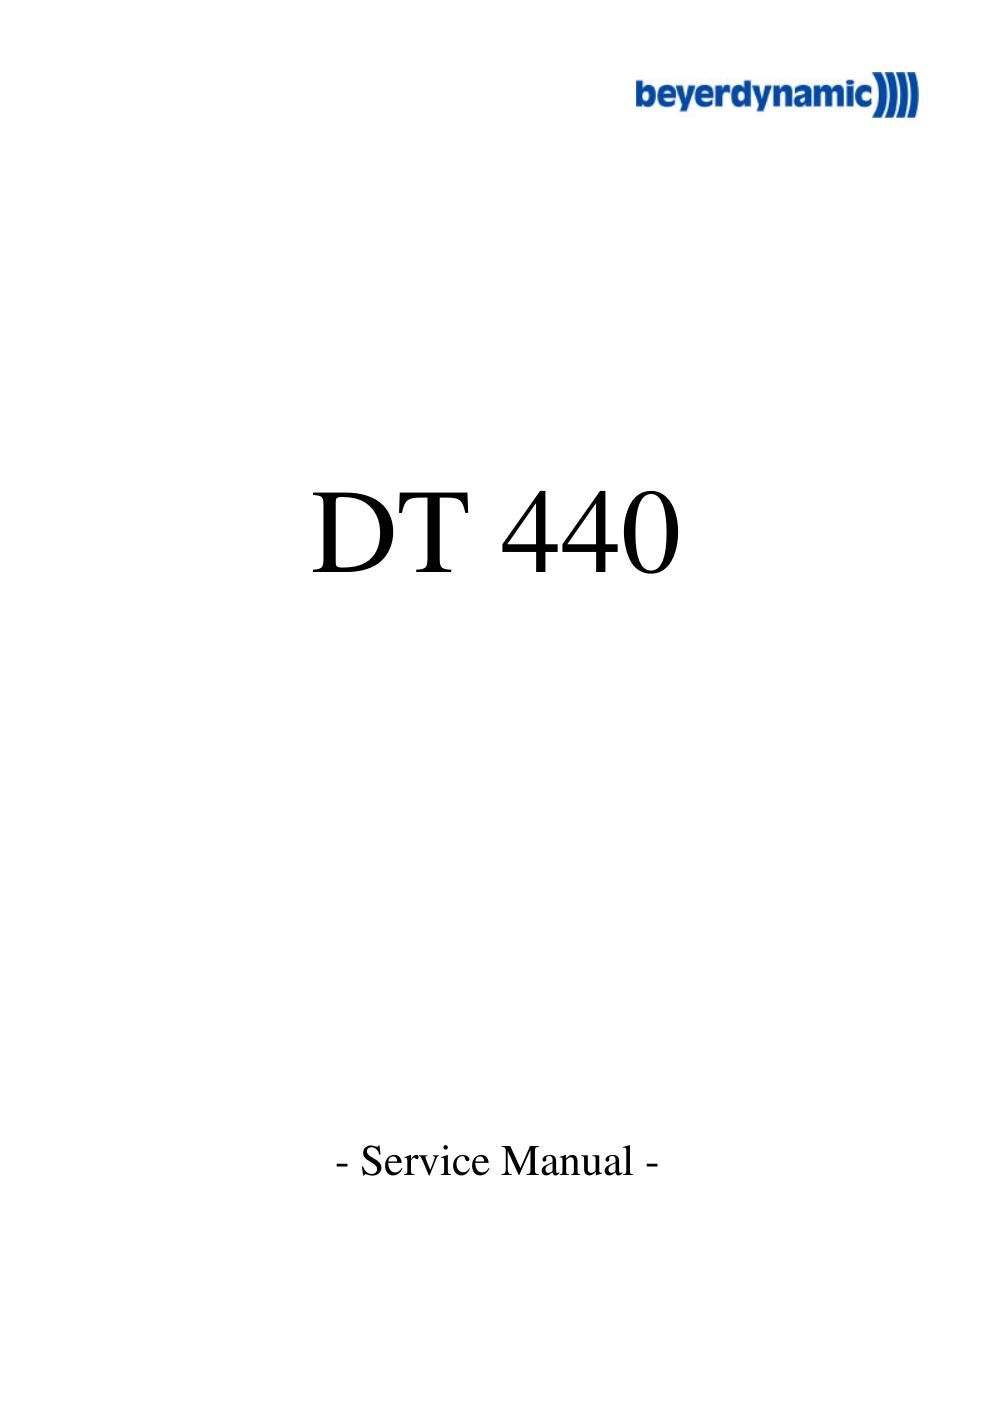 beyerdynamic dt 440 service manual